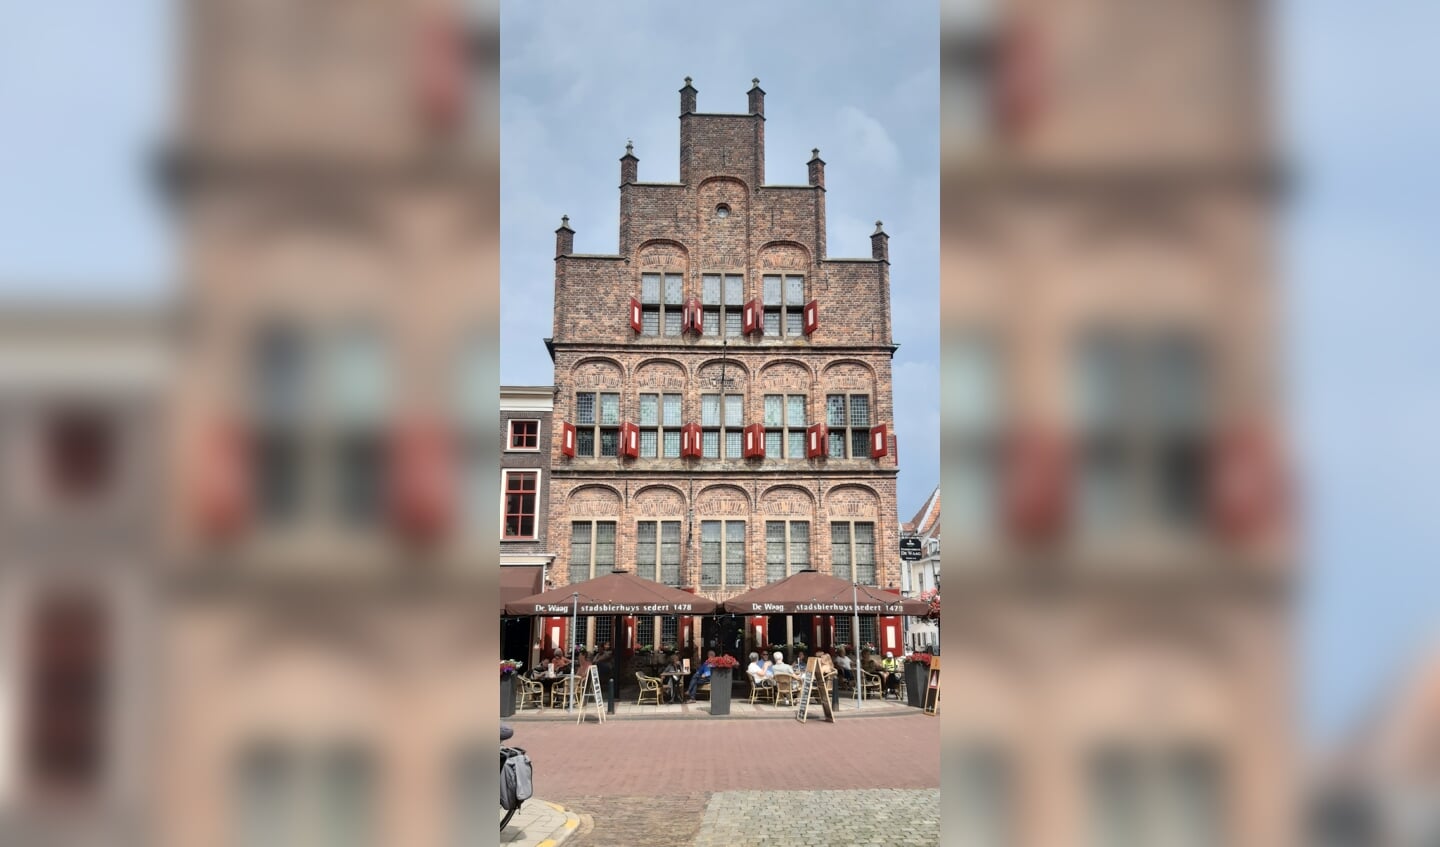 Deze foto's zijn begin juli gemaakt in het mosterdstadje Doesburg. Mooie plaats om te bezoeken!
